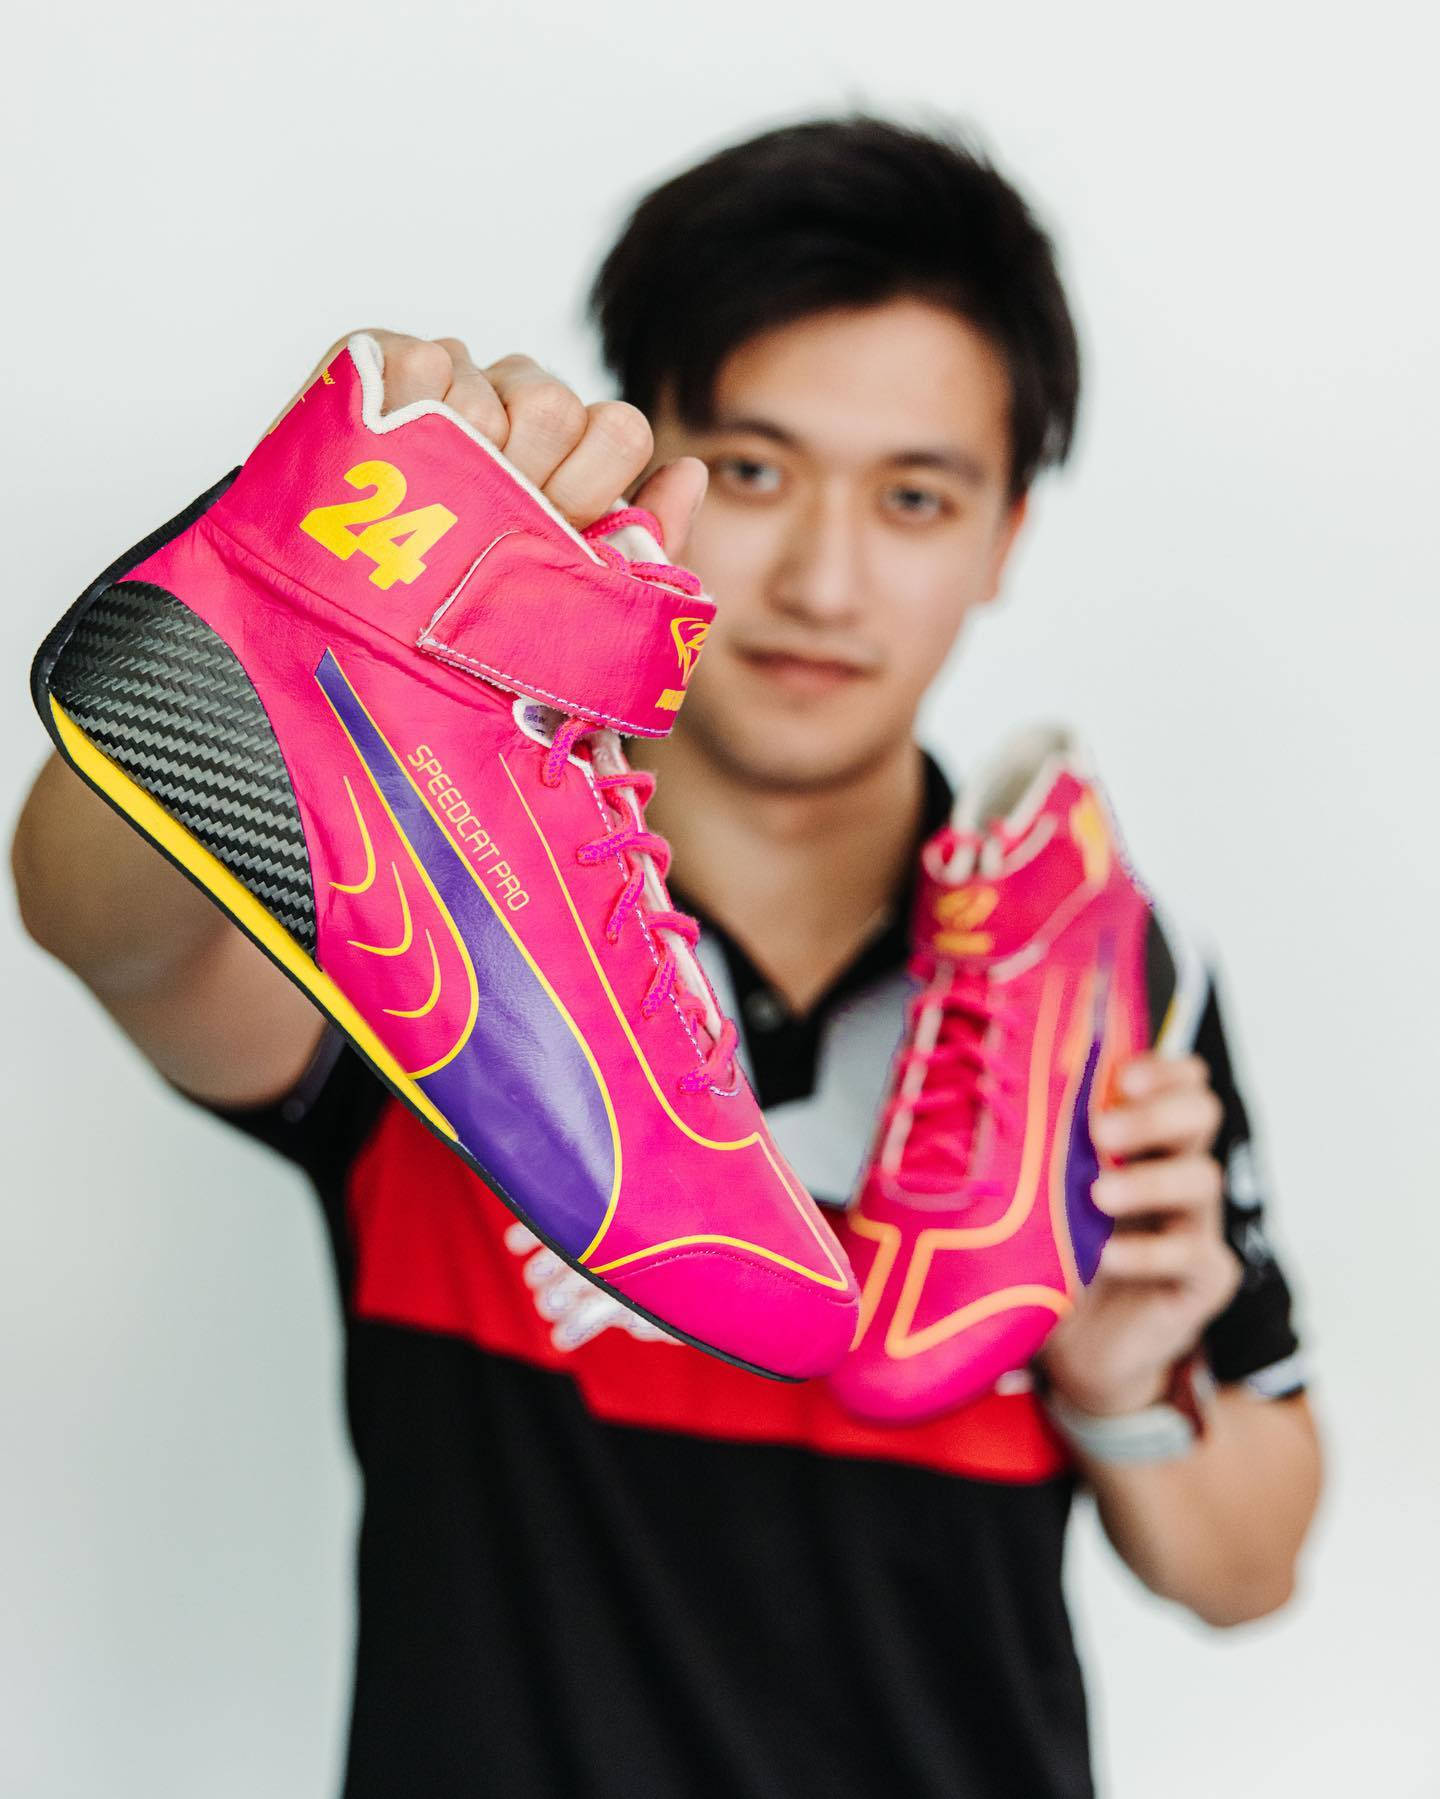 Guanyu Zhou Pink Sneakers Background